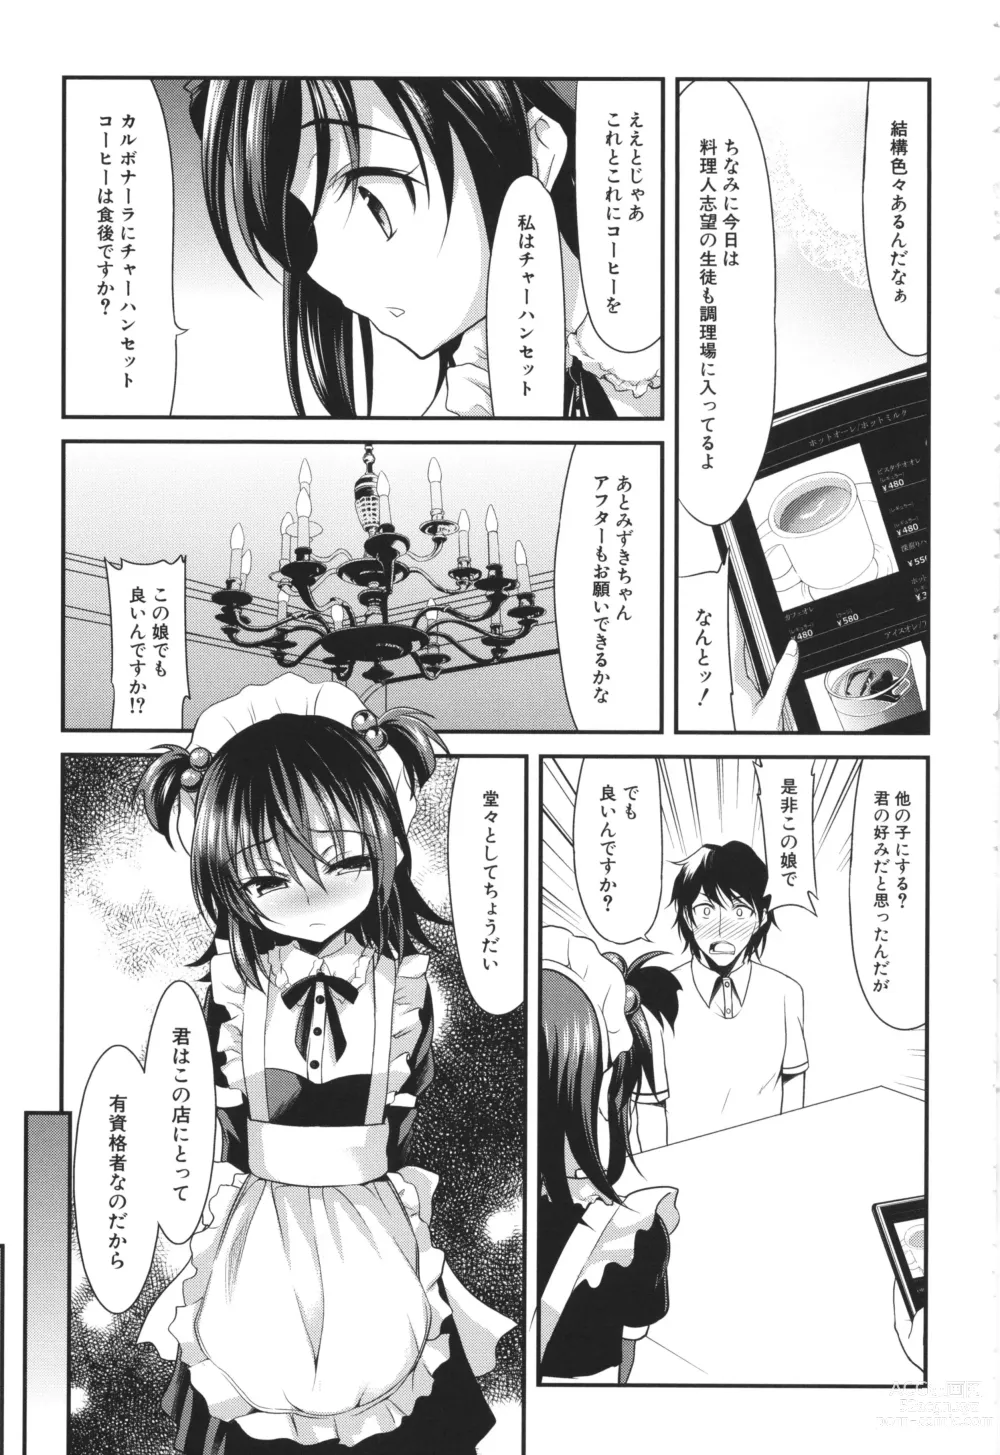 Page 6 of manga Chibikko Gakuen Soapland